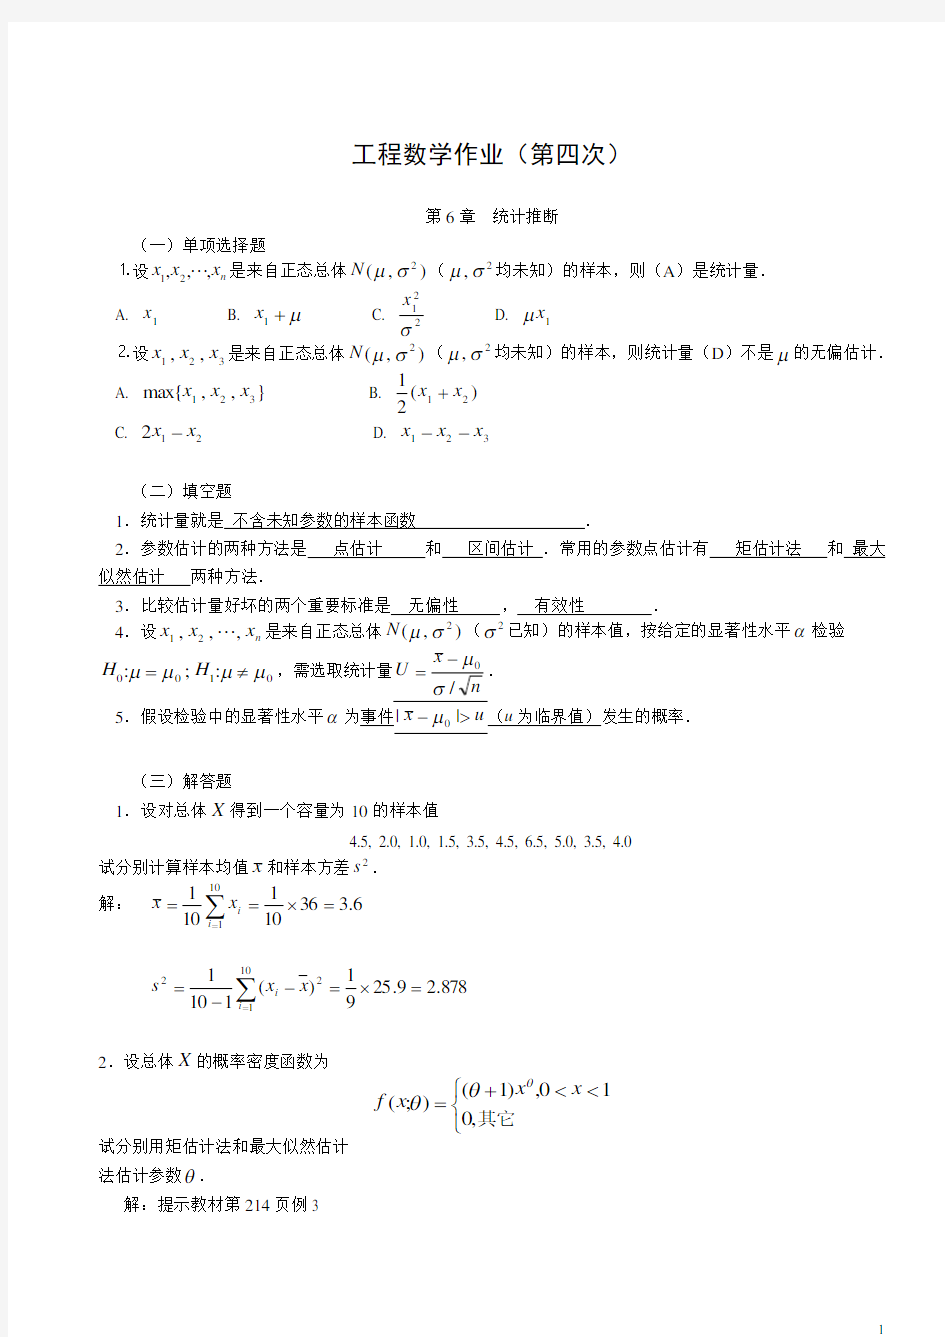 【工程数学】形成性考核册作业答案4